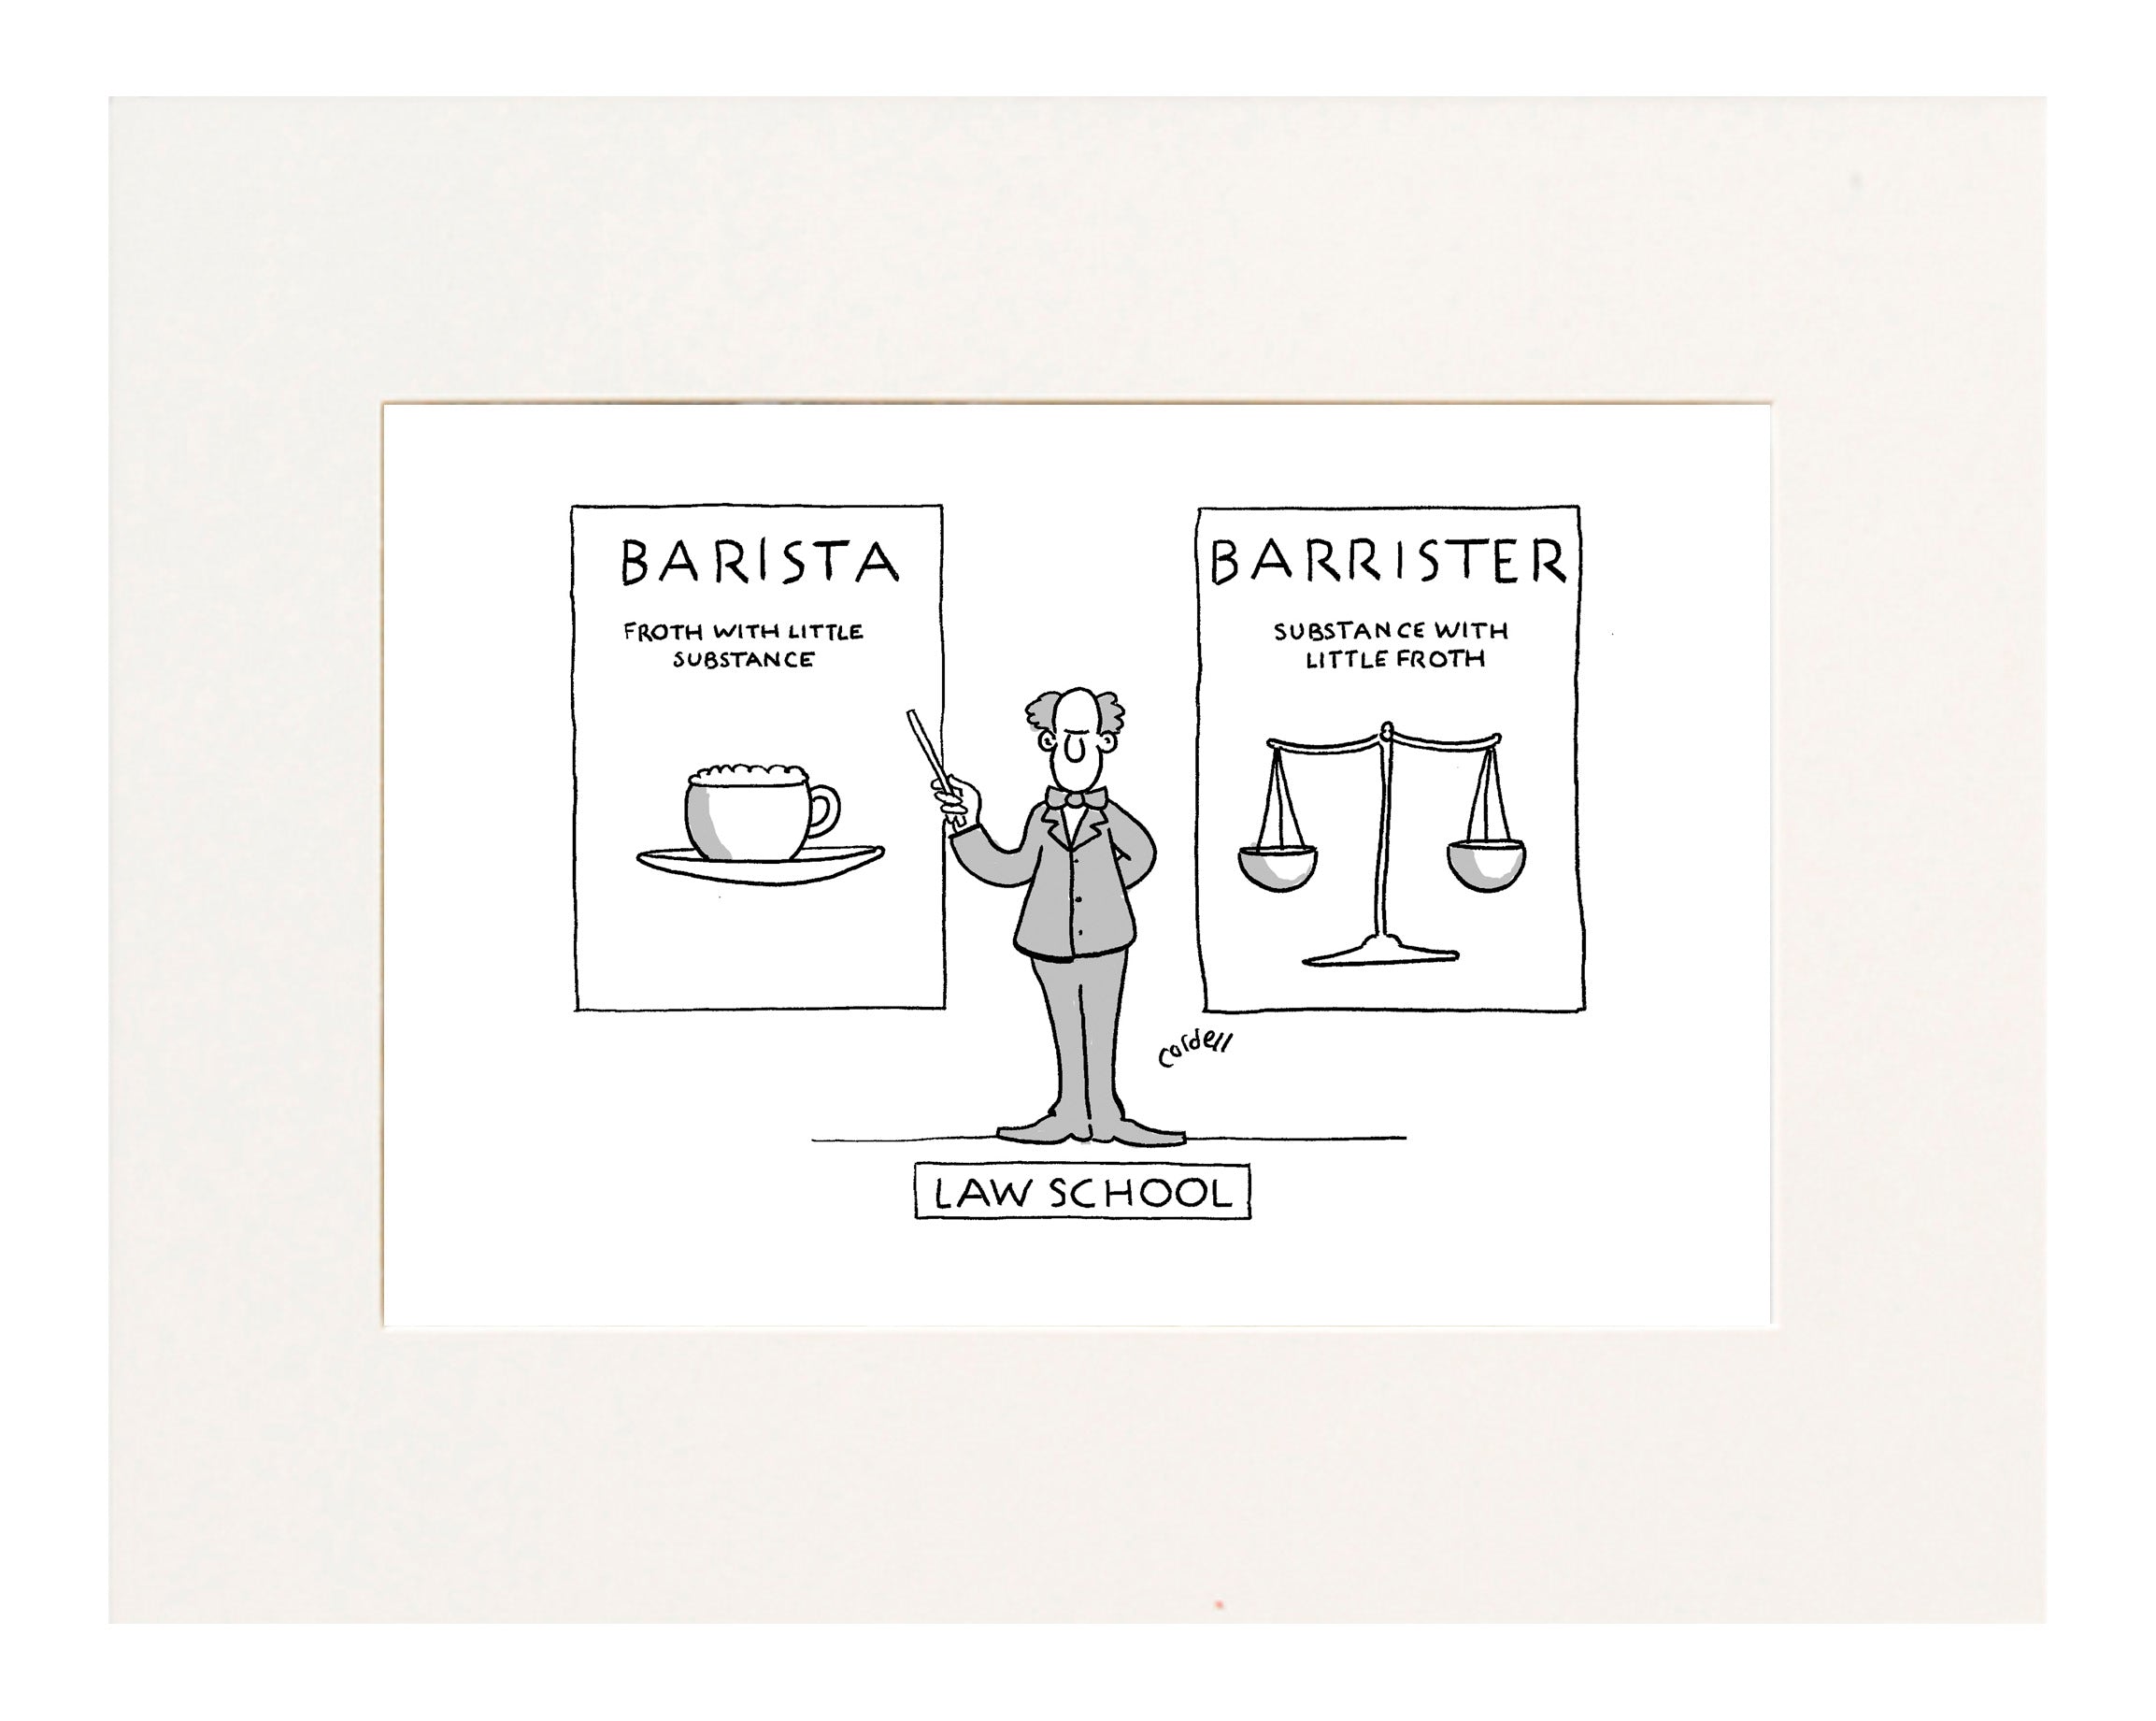 Tim Cordell Barista vs Barrister Cartoon Print CartoonStock